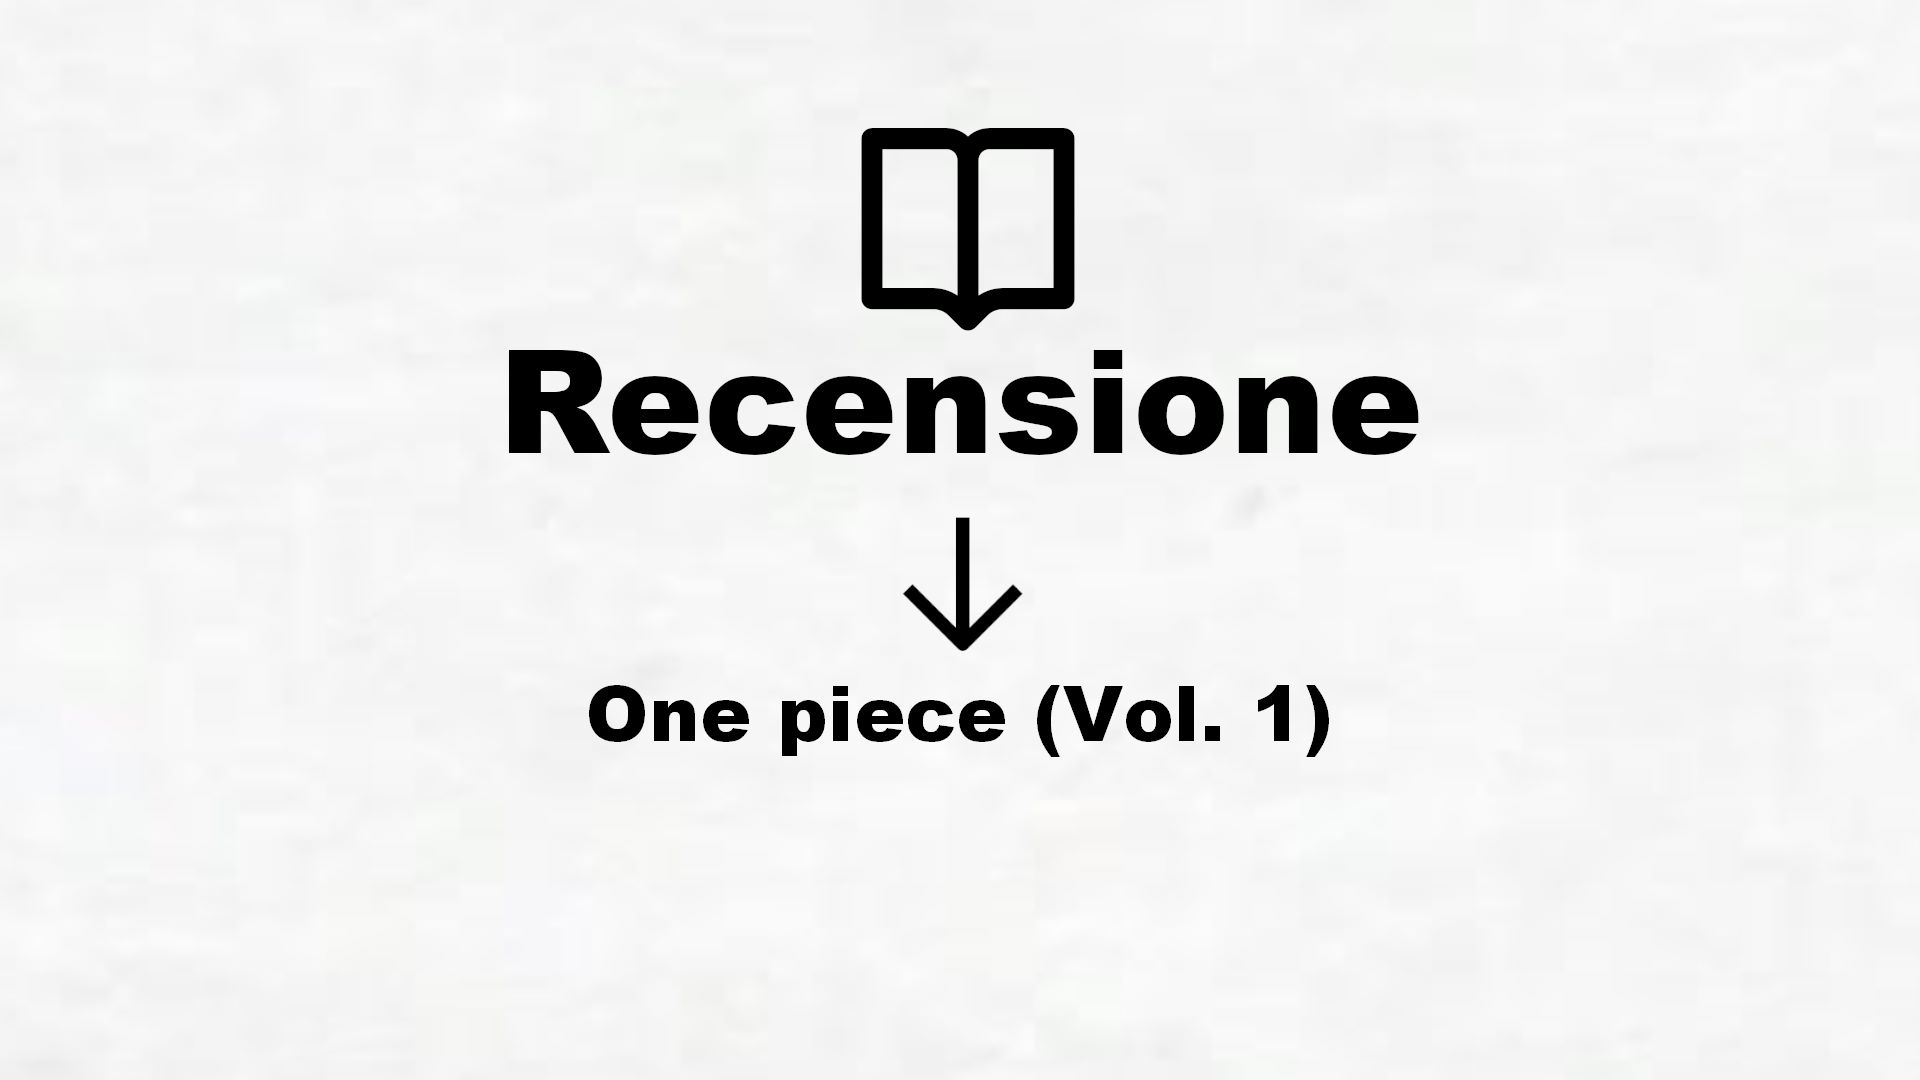 One piece (Vol. 1) – Recensione Libro